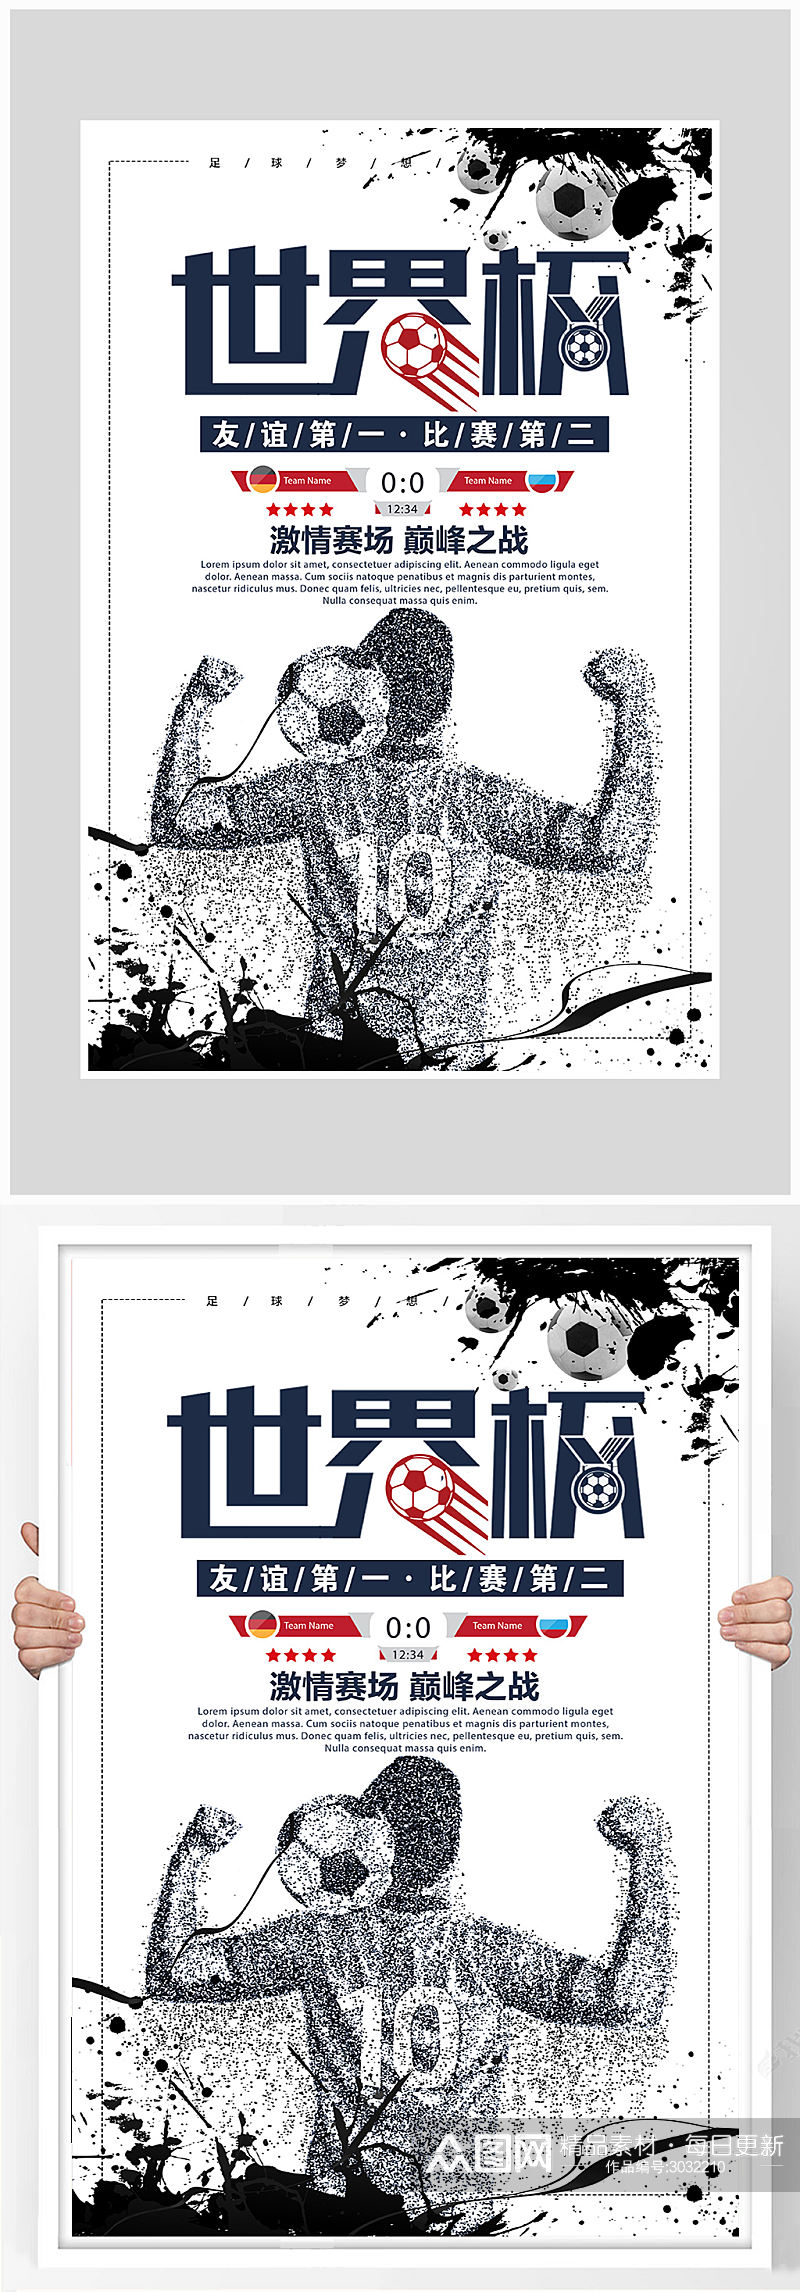 创意世界杯比赛海报设计素材